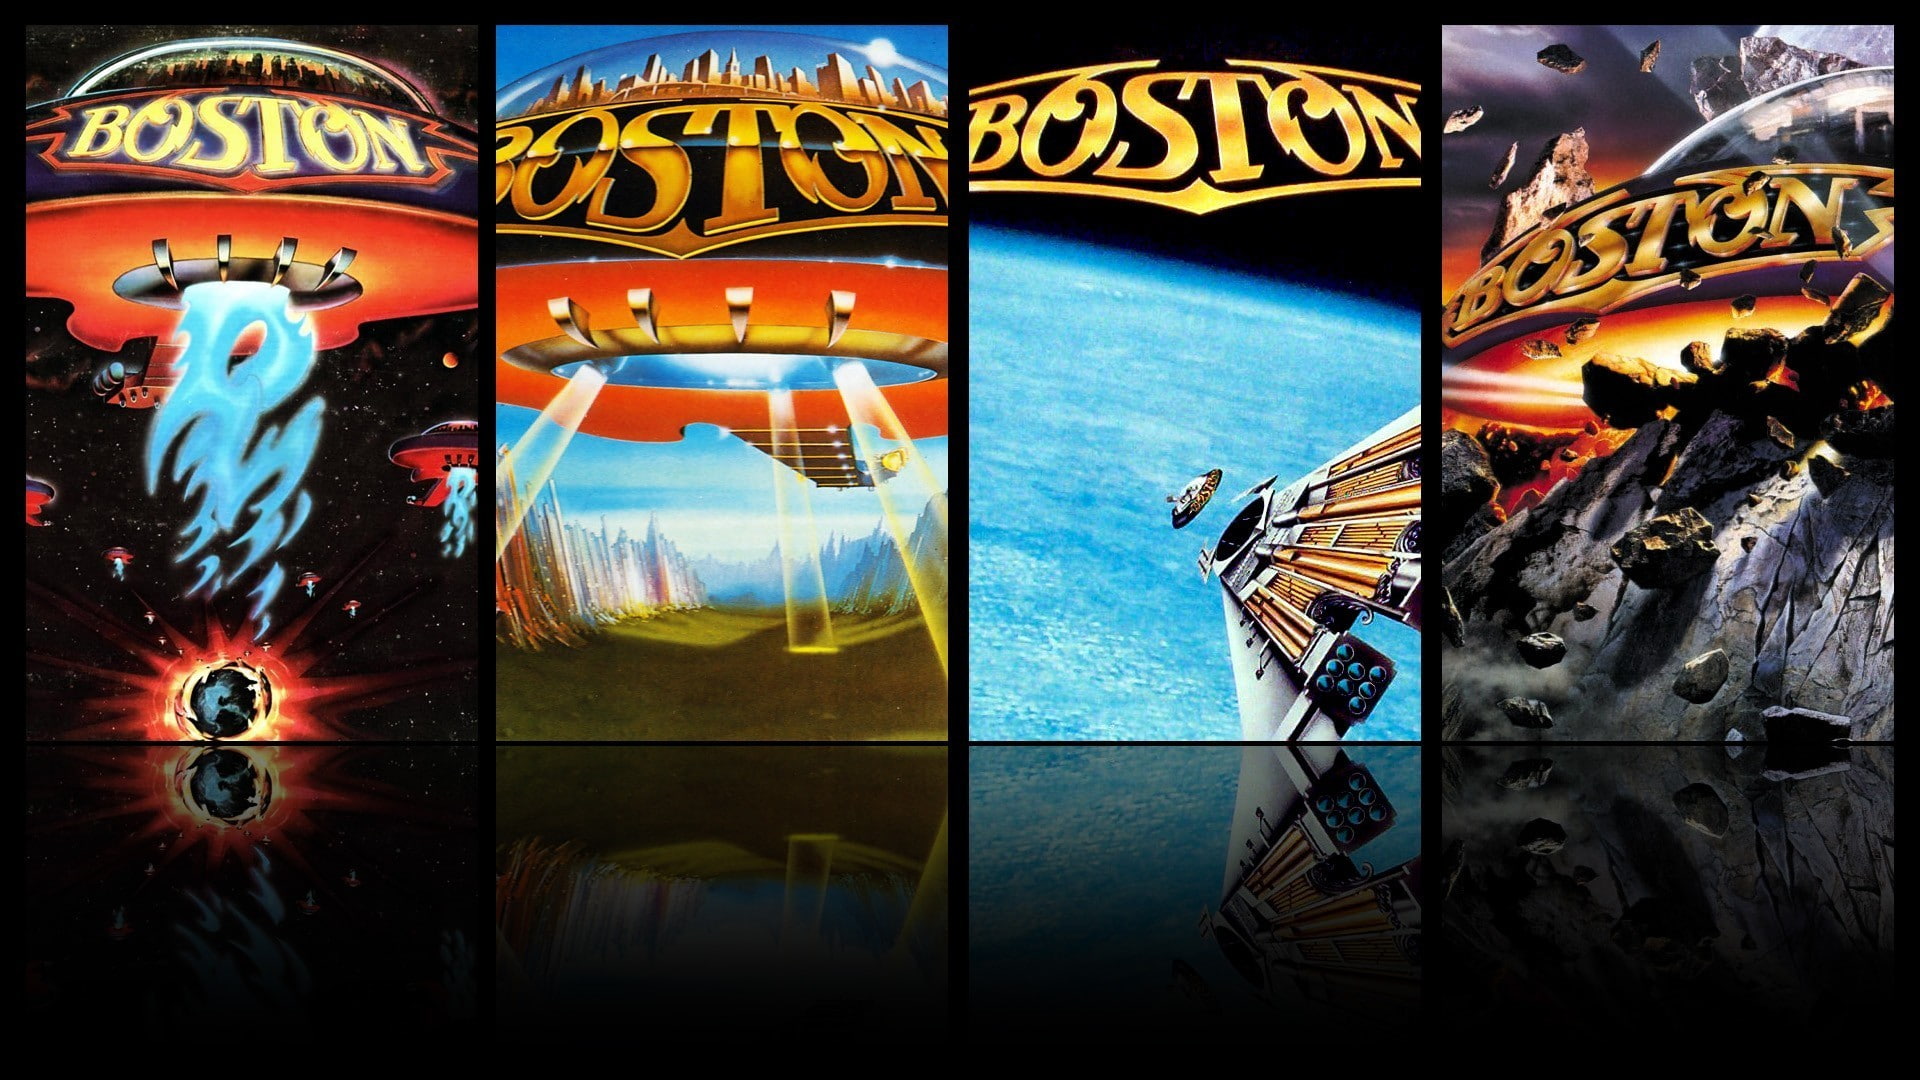 Boston (Band), music, rock bands